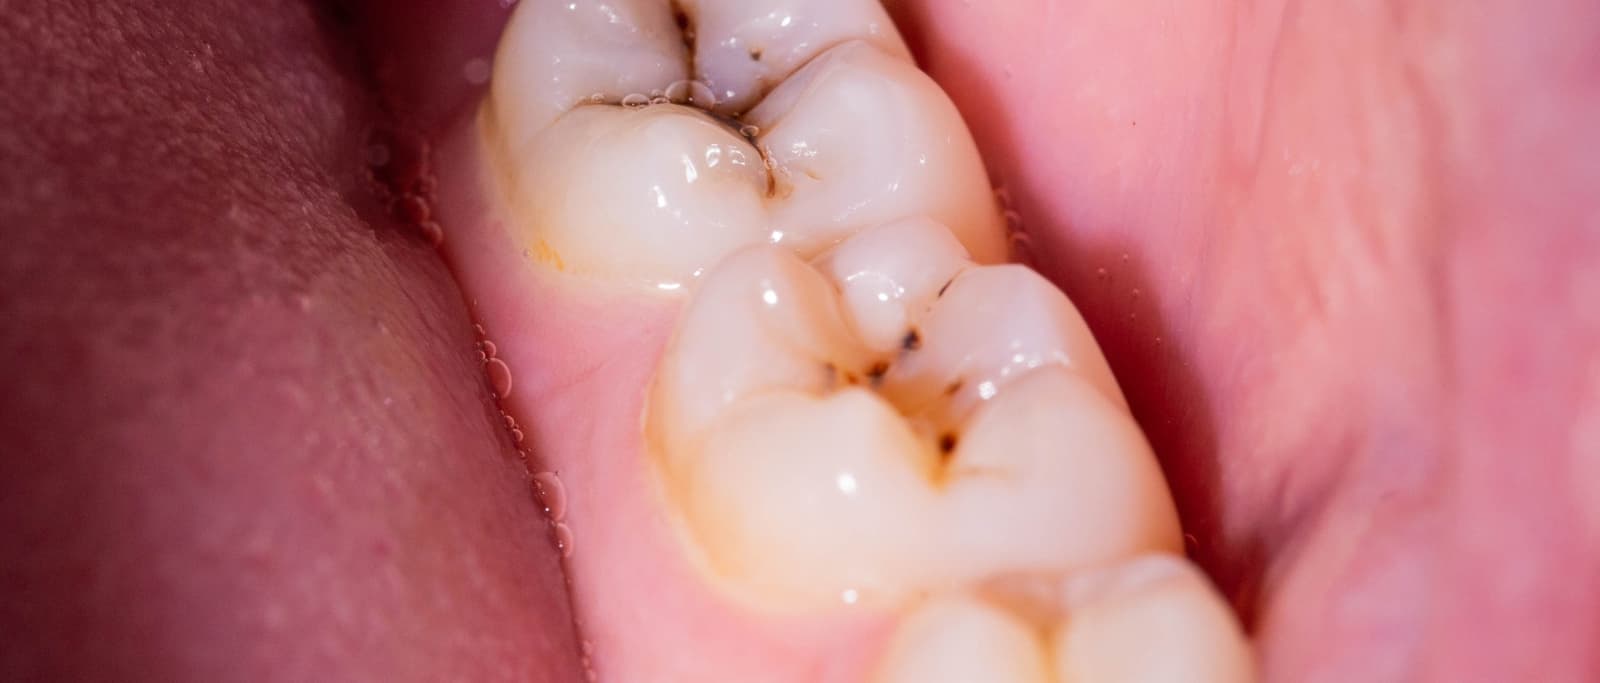 Prevenir caries dentales en las muelas